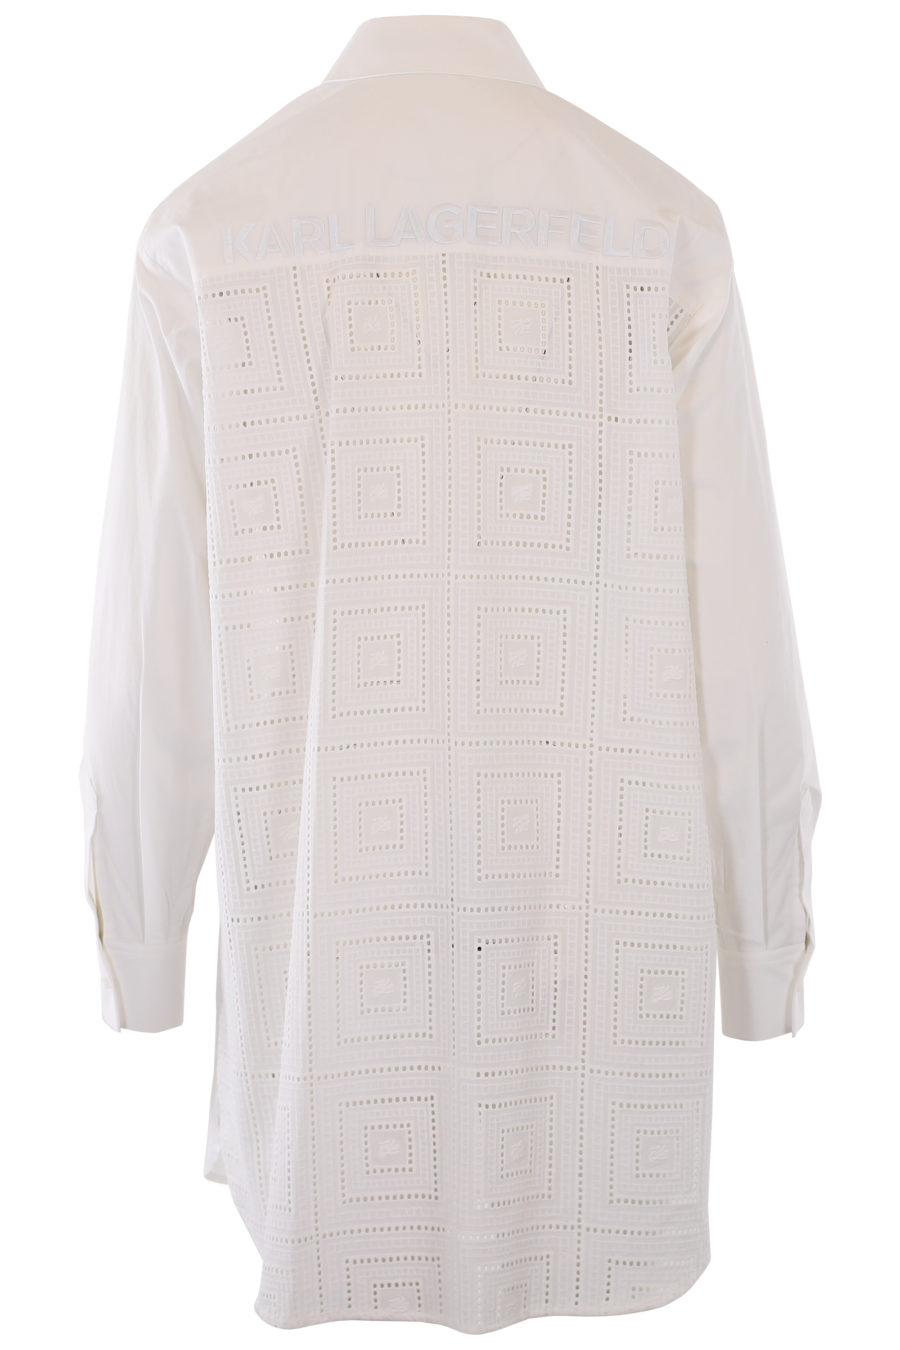 Camisa blanca larga con logo y detalles bordados - IMG 1246